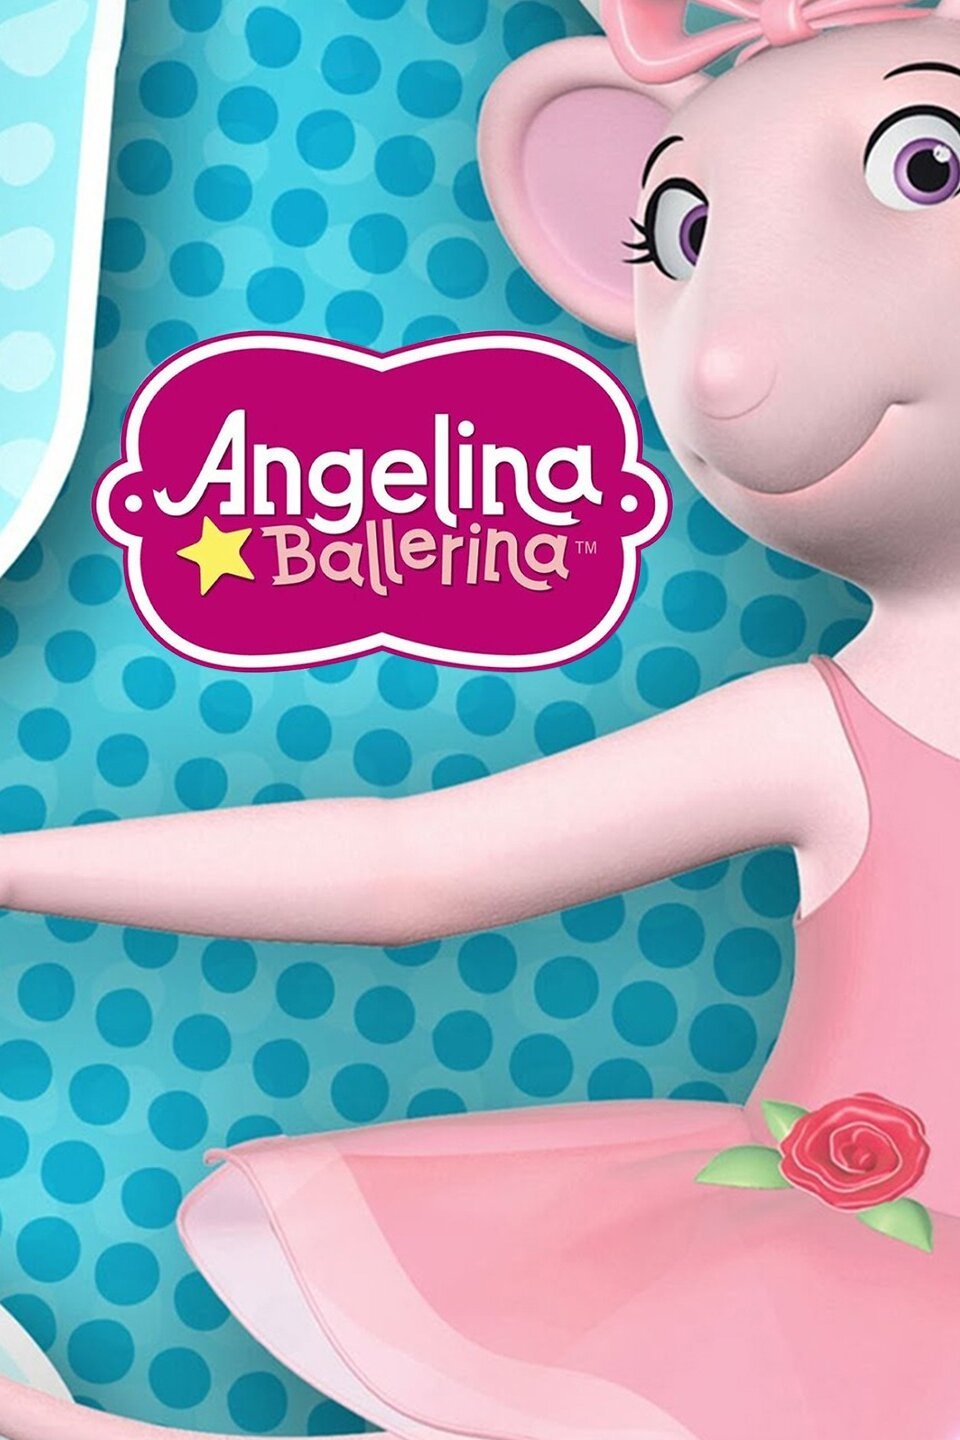 Angelina Ballerina - Rotten Tomatoes